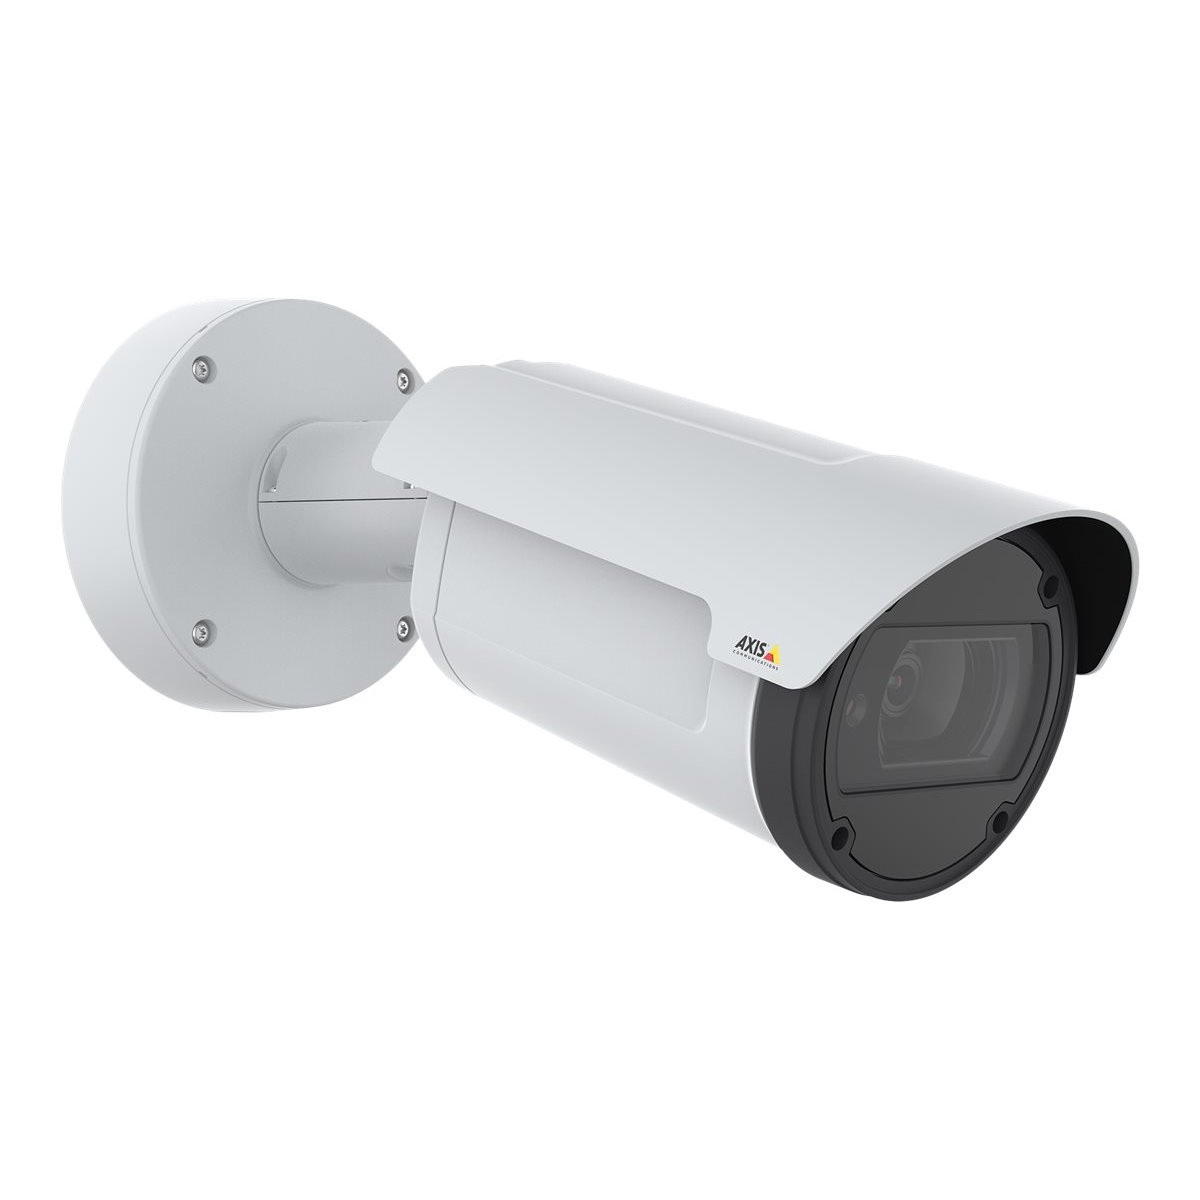 Axis Q1798-LE - IP security camera - Outdoor - Wired - EN 55032 A - EN 50121-4 - IEC 62236-4 - EN 55024 - EN 61000-6-1 - EN 6100